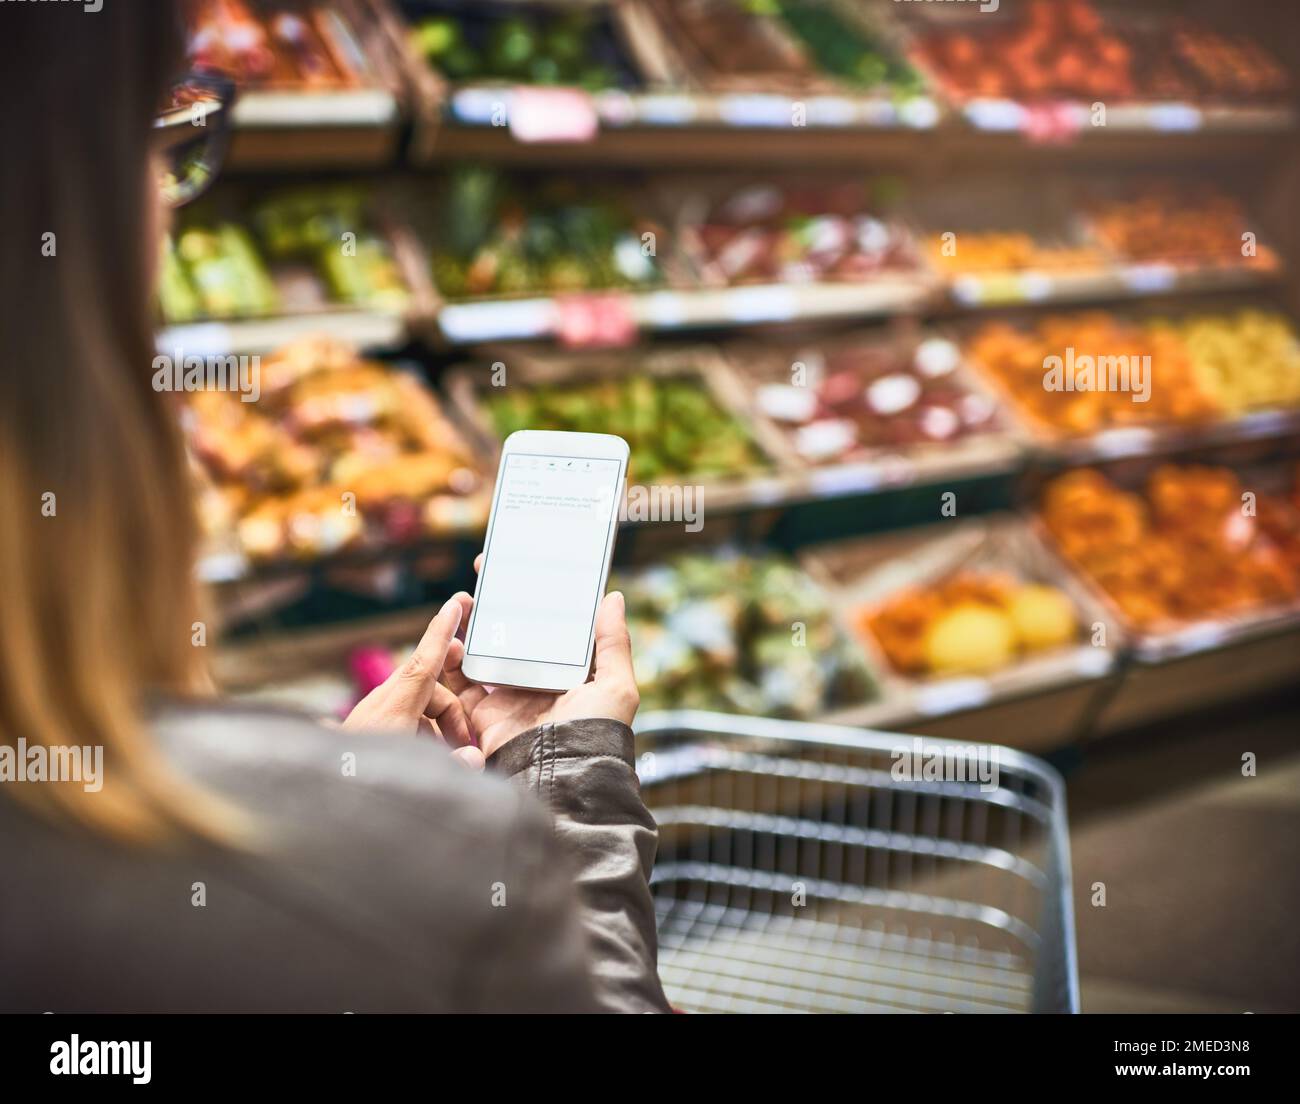 Risparmiate carta, utilizzate un'app per la lista della spesa. una donna che utilizza un telefono cellulare in un negozio di alimentari. Foto Stock